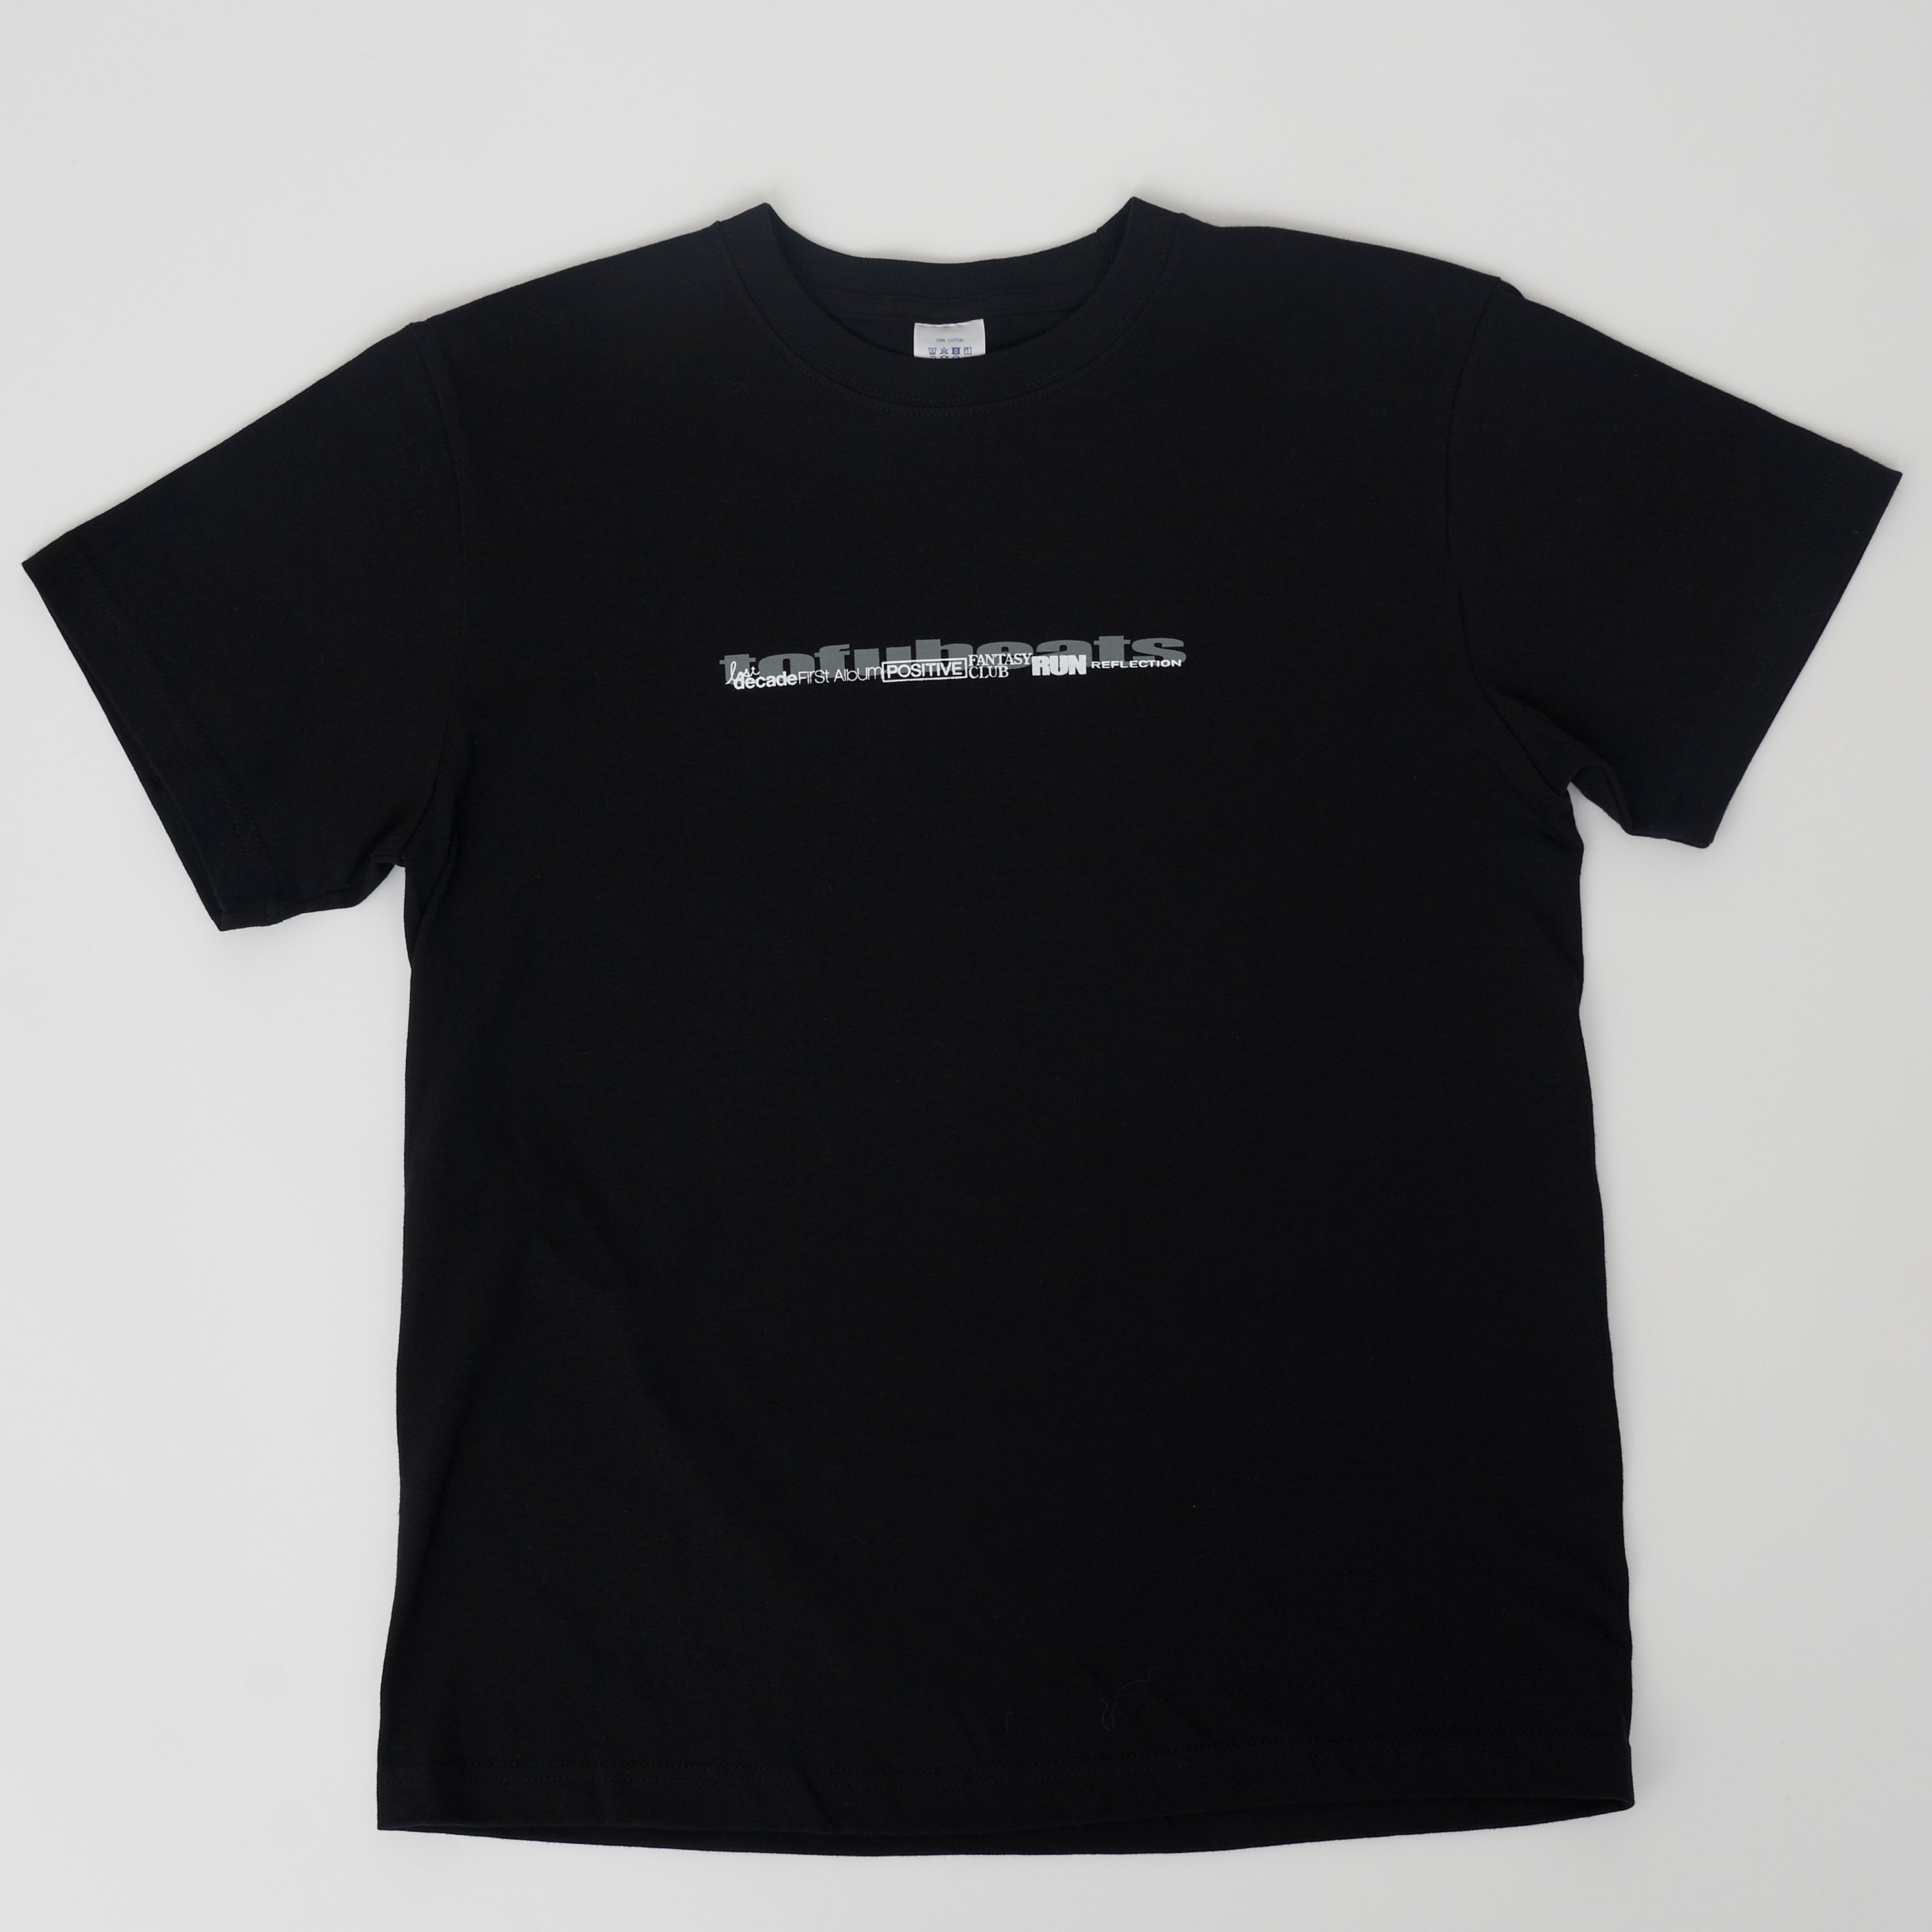 10th anniv. Discography T-Shirts BLACK